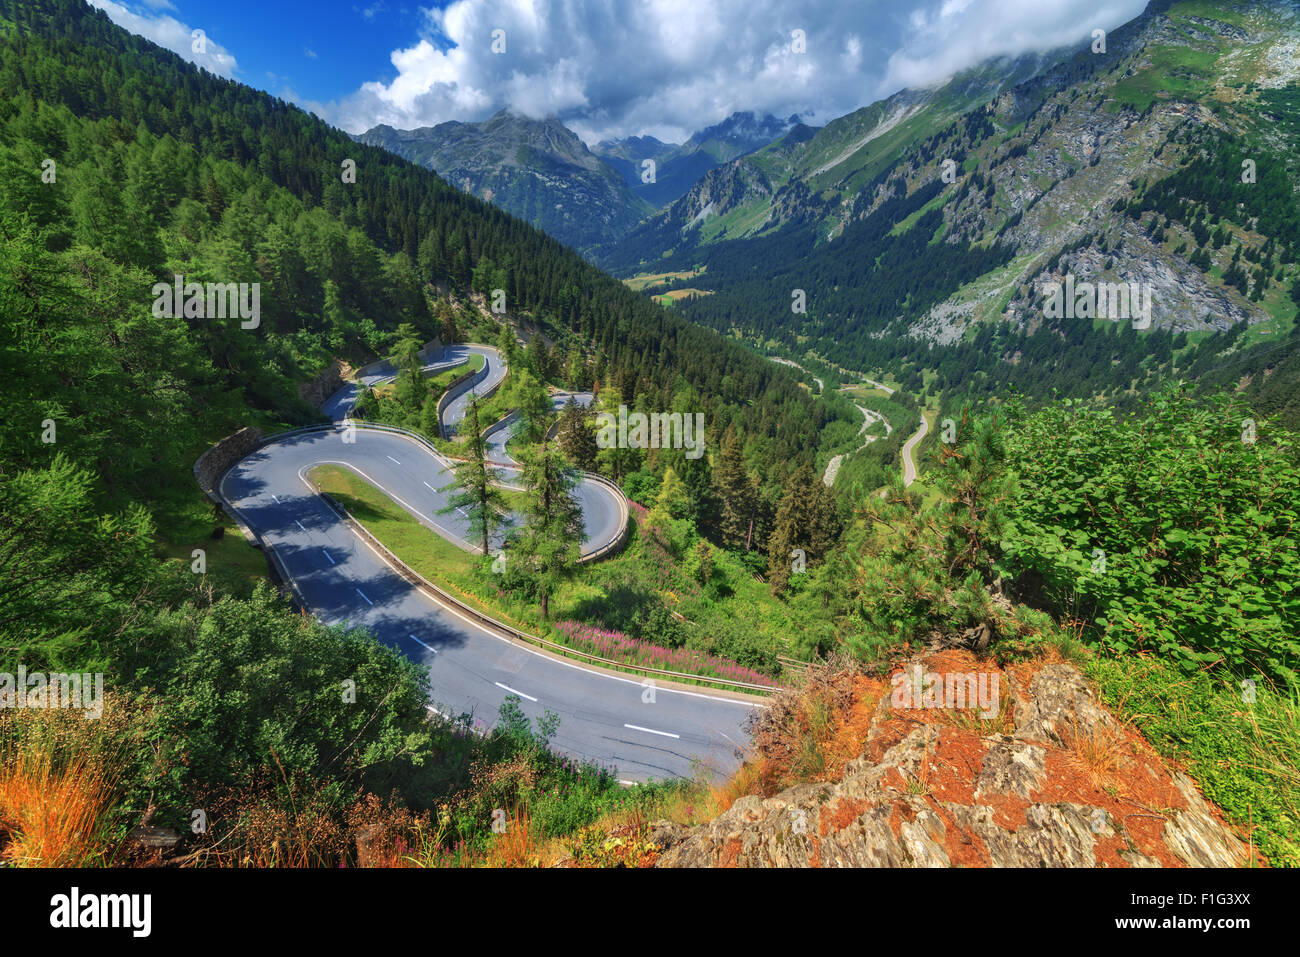 Amazing view of maloja pass, Alps, Switzerland, Europe. Stock Photo